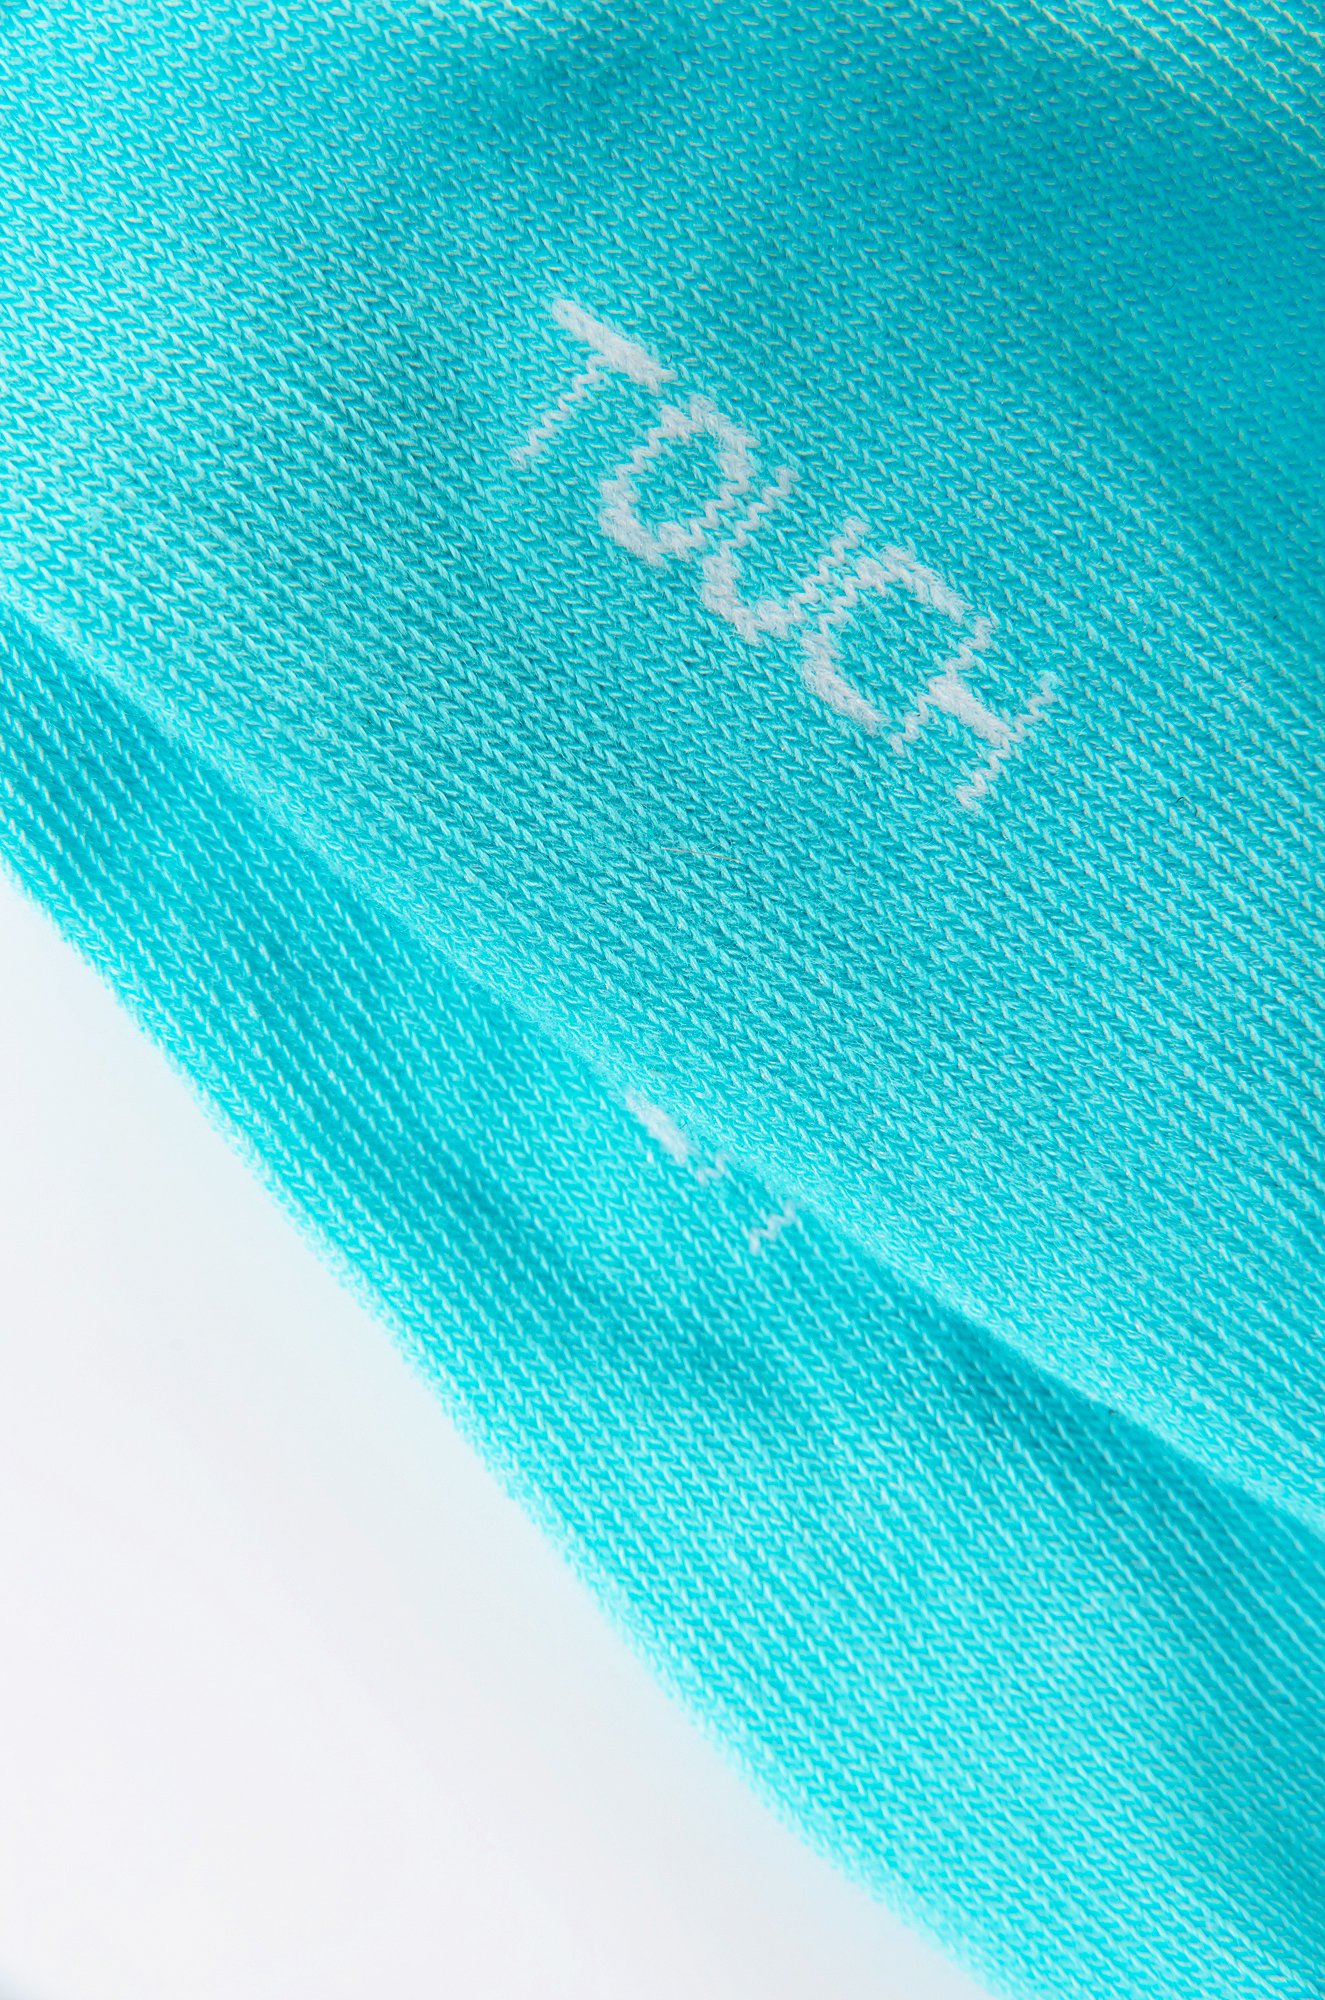 Подарочные женские носки Touch